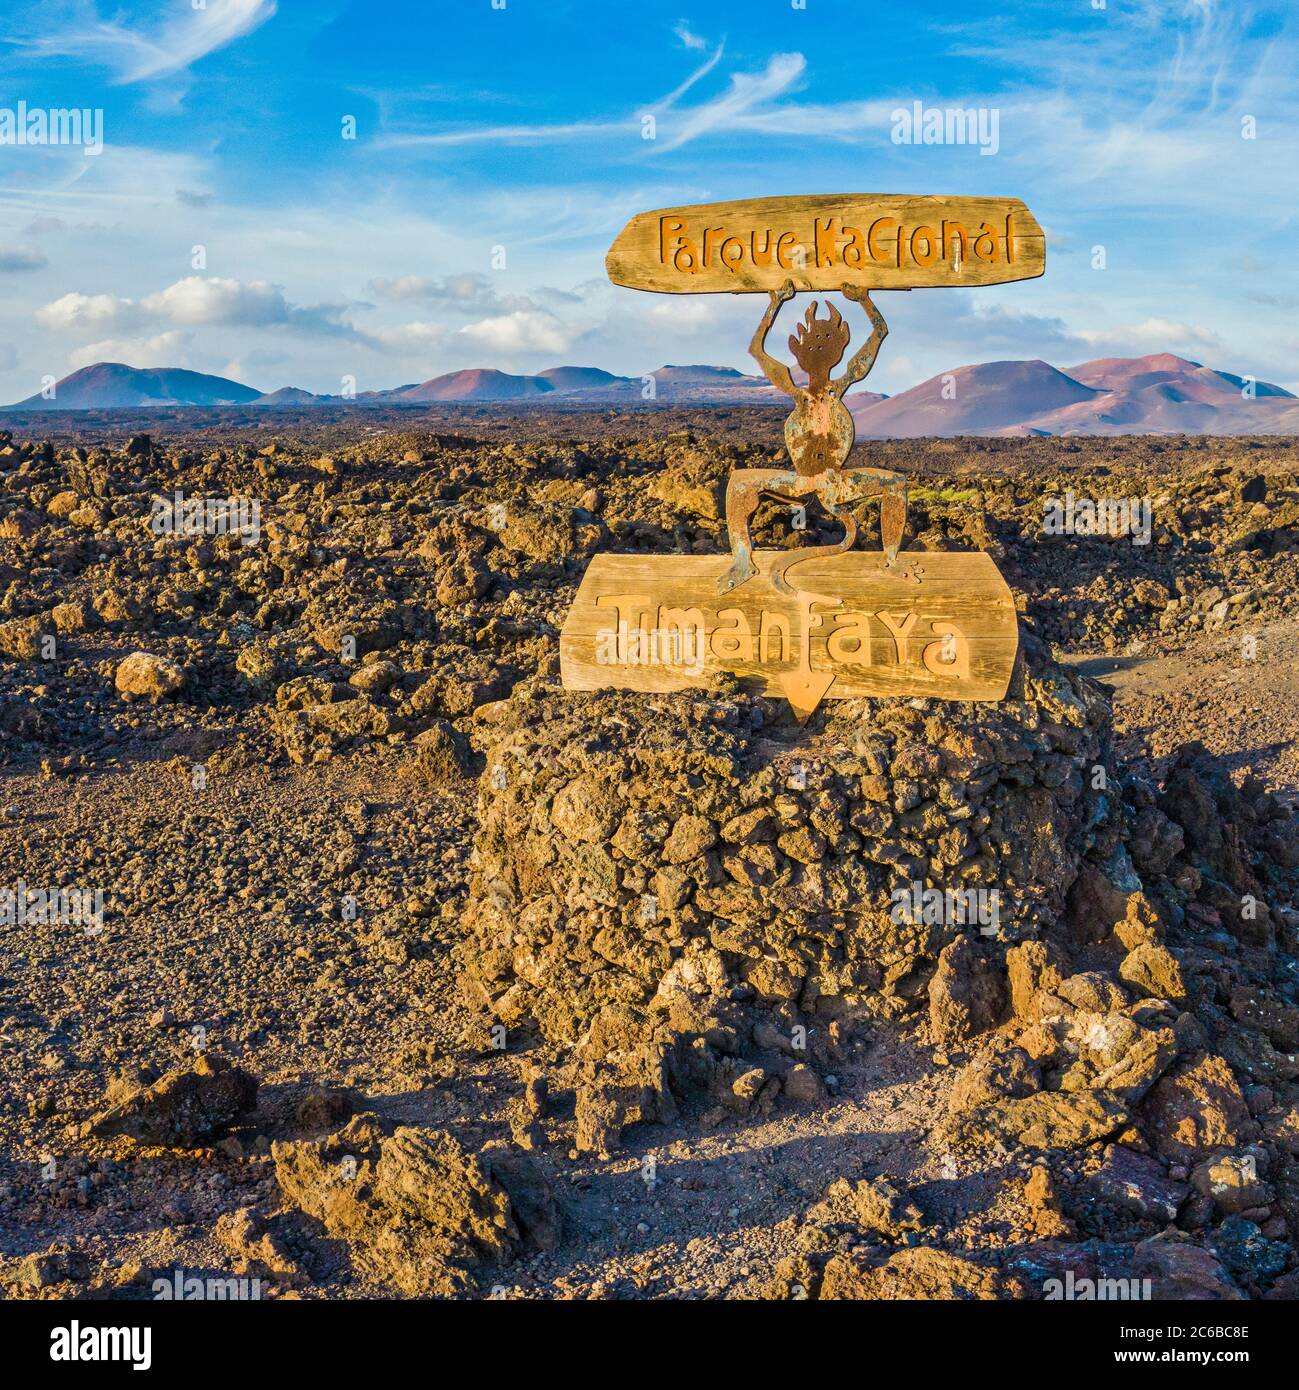 Parque Nacional Timanfaya, señal de entrada al Parque Nacional, Lanzarote, Islas Canarias, España, Atlántico, Europa Foto de stock